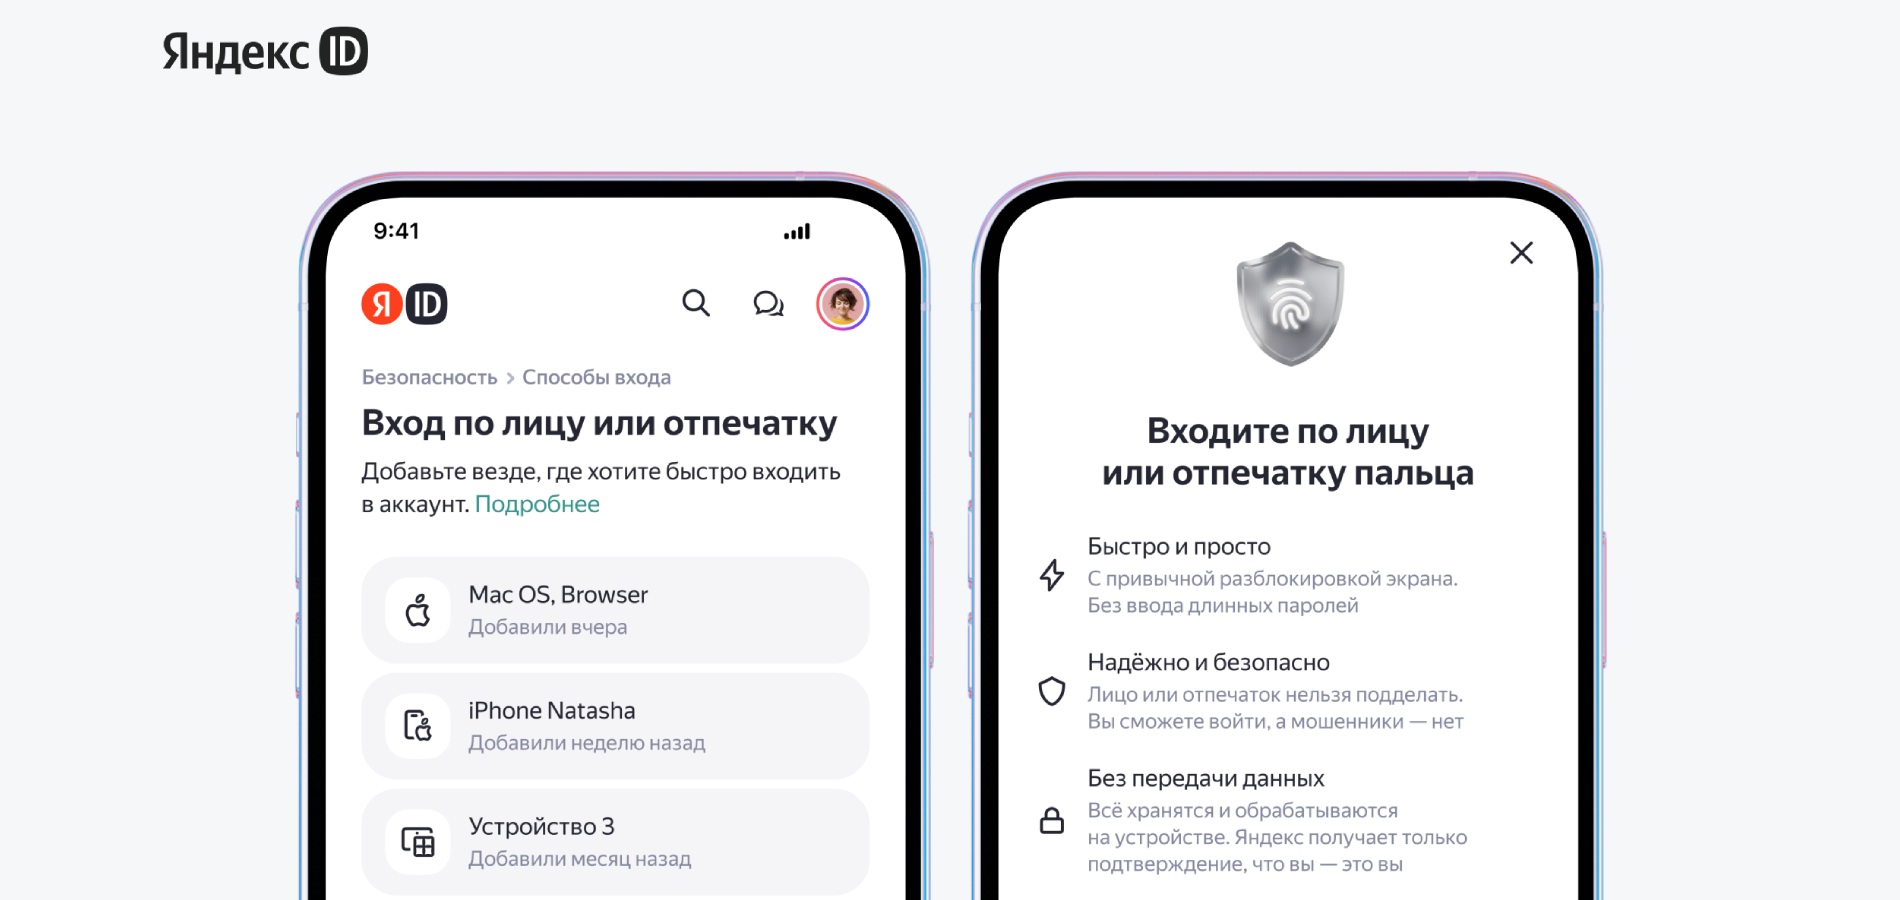 Вход в Яндекс ID теперь возможен по лицу и отпечатку пальца